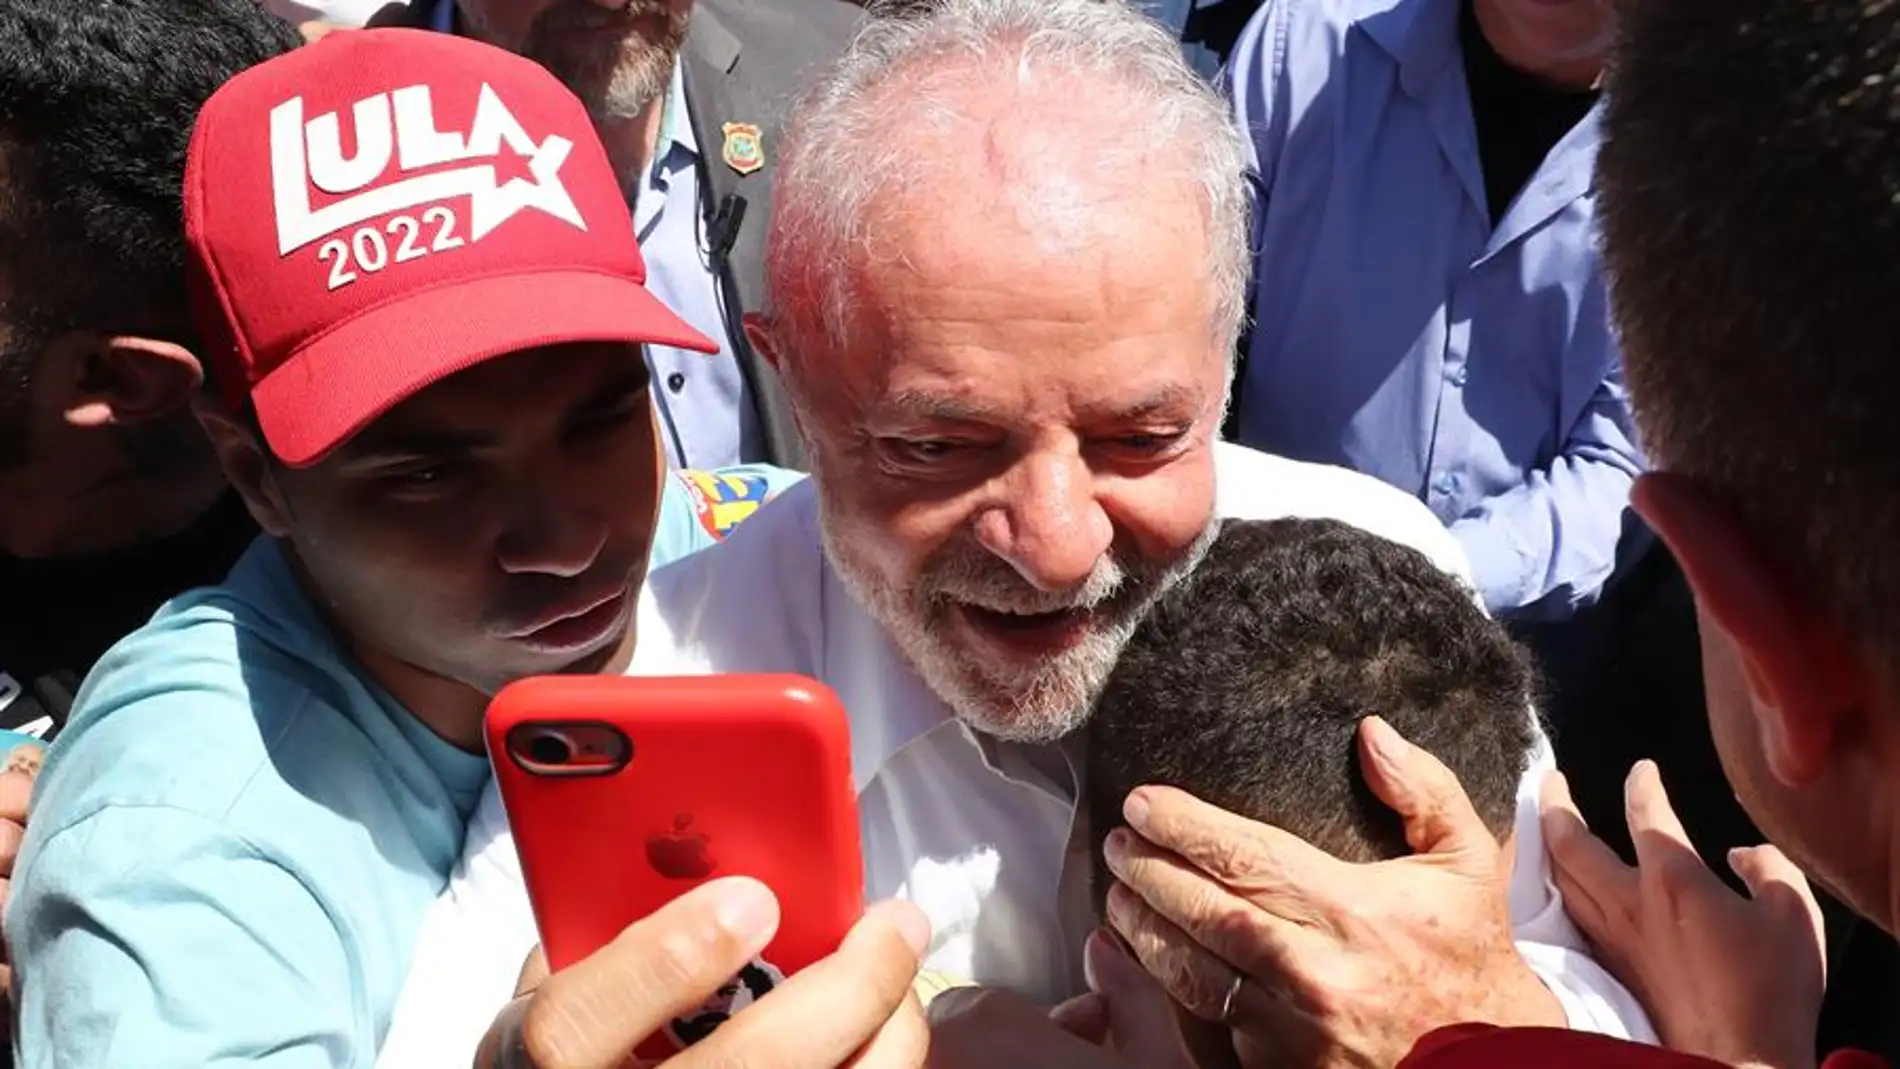  Lula da Silva posa con simpatizantes a su salida tras votar en la segunda ronda